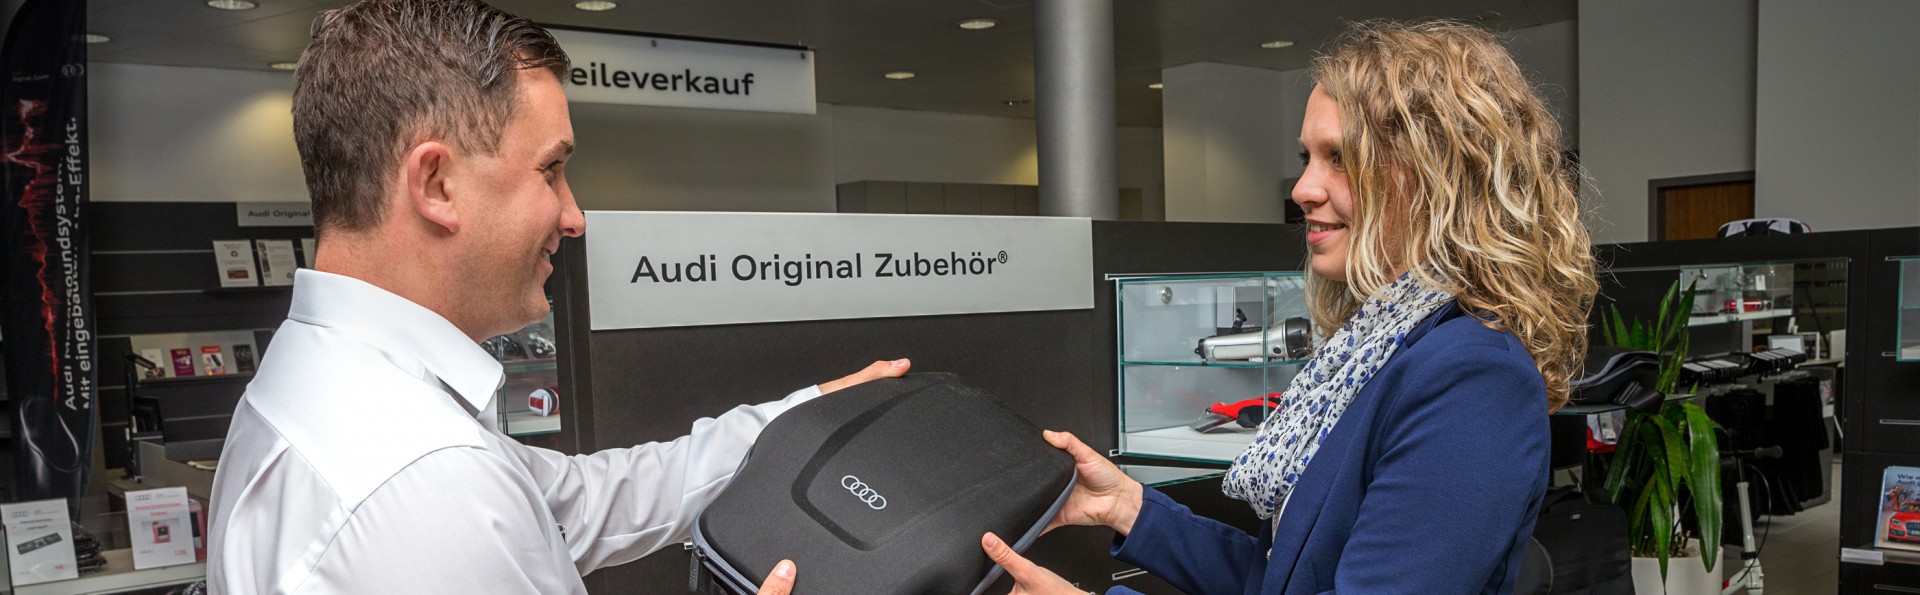 Audi Original Zubehör / Accessoires in Bayern - Augsburg